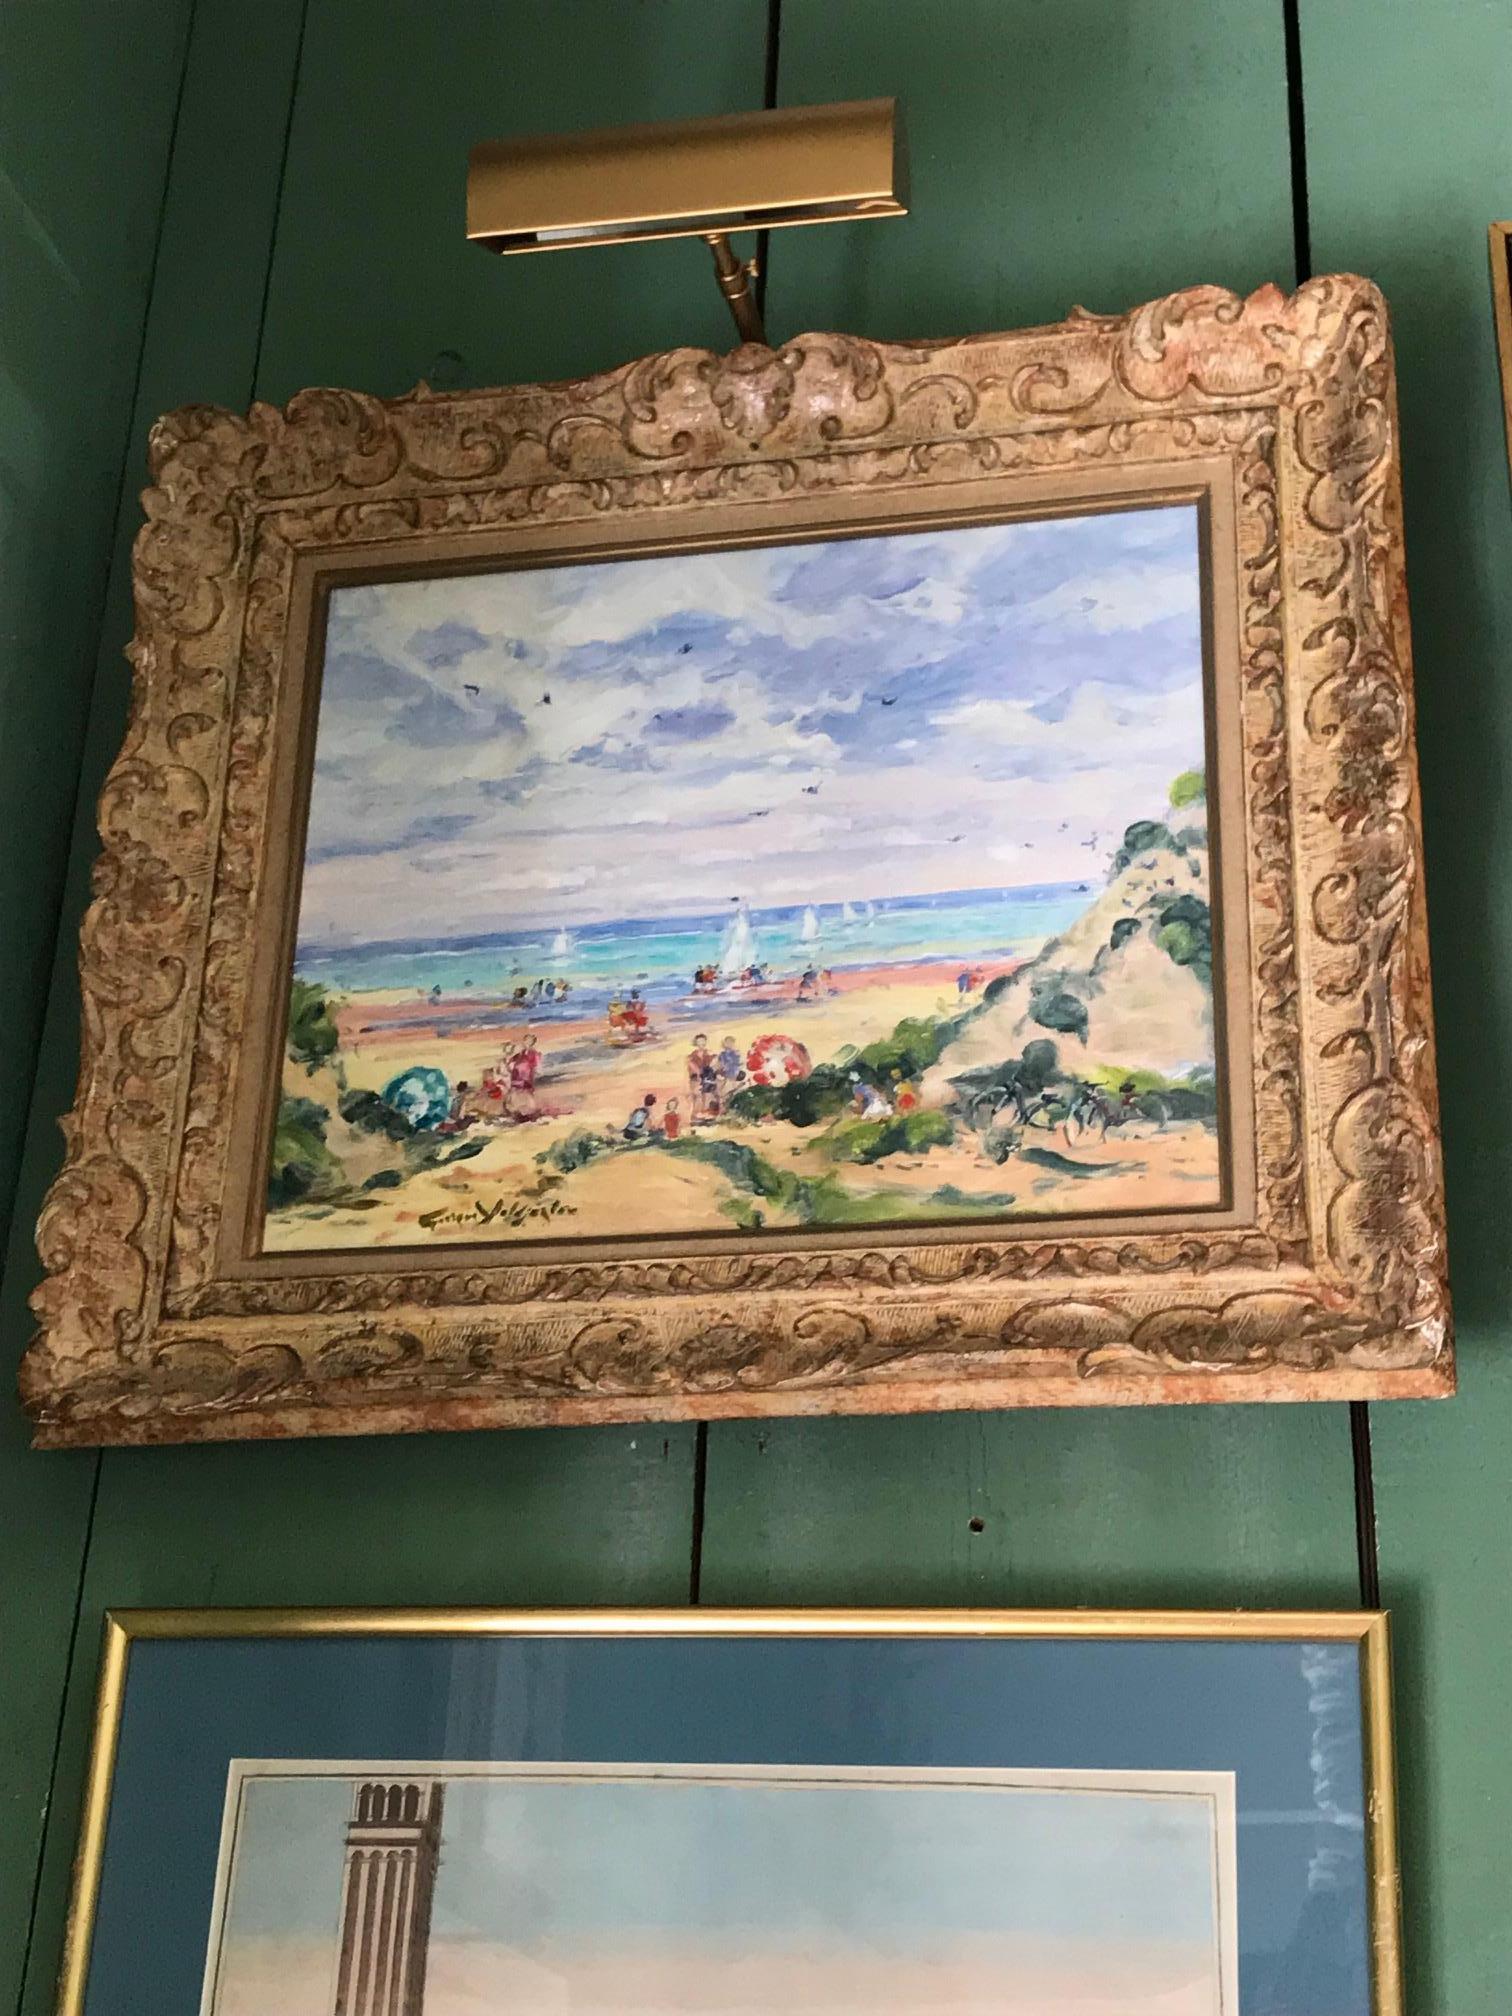 Huile sur toile du 20e siècle, paysage de plage et de mer, artiste grec né à Paris, galerie de Los Angeles 
George Yoldjoglou huile sur toile scène de plage animée H : 22